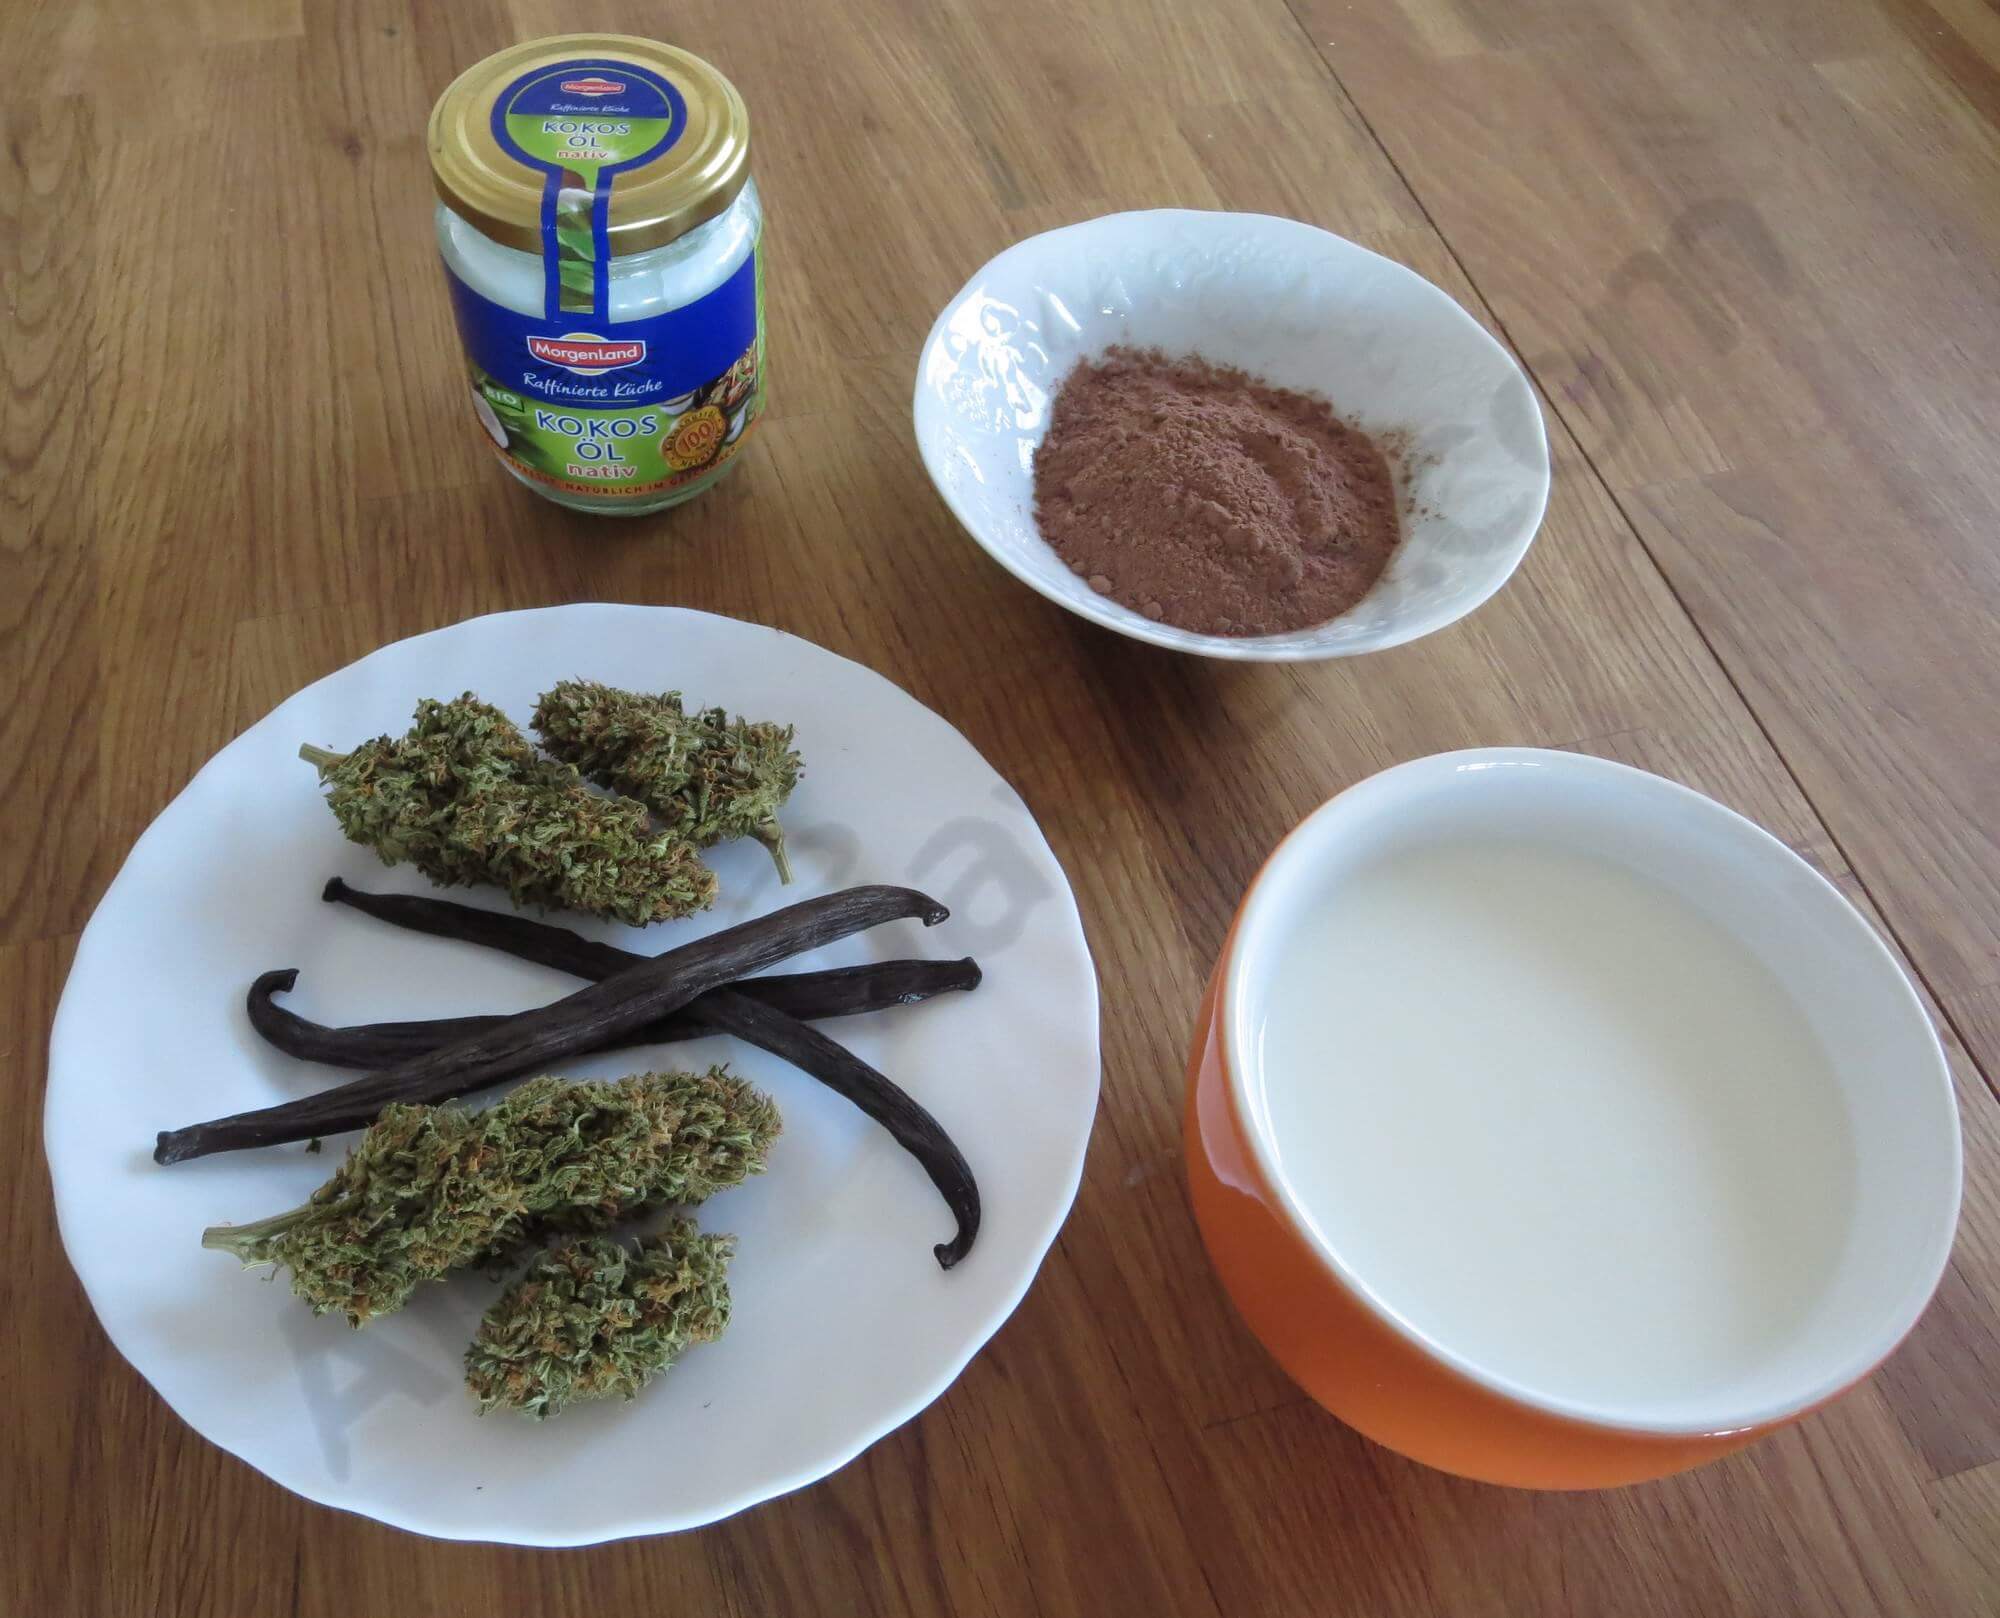 Ingrédients utilisés pour réaliser la tisane au cannabis